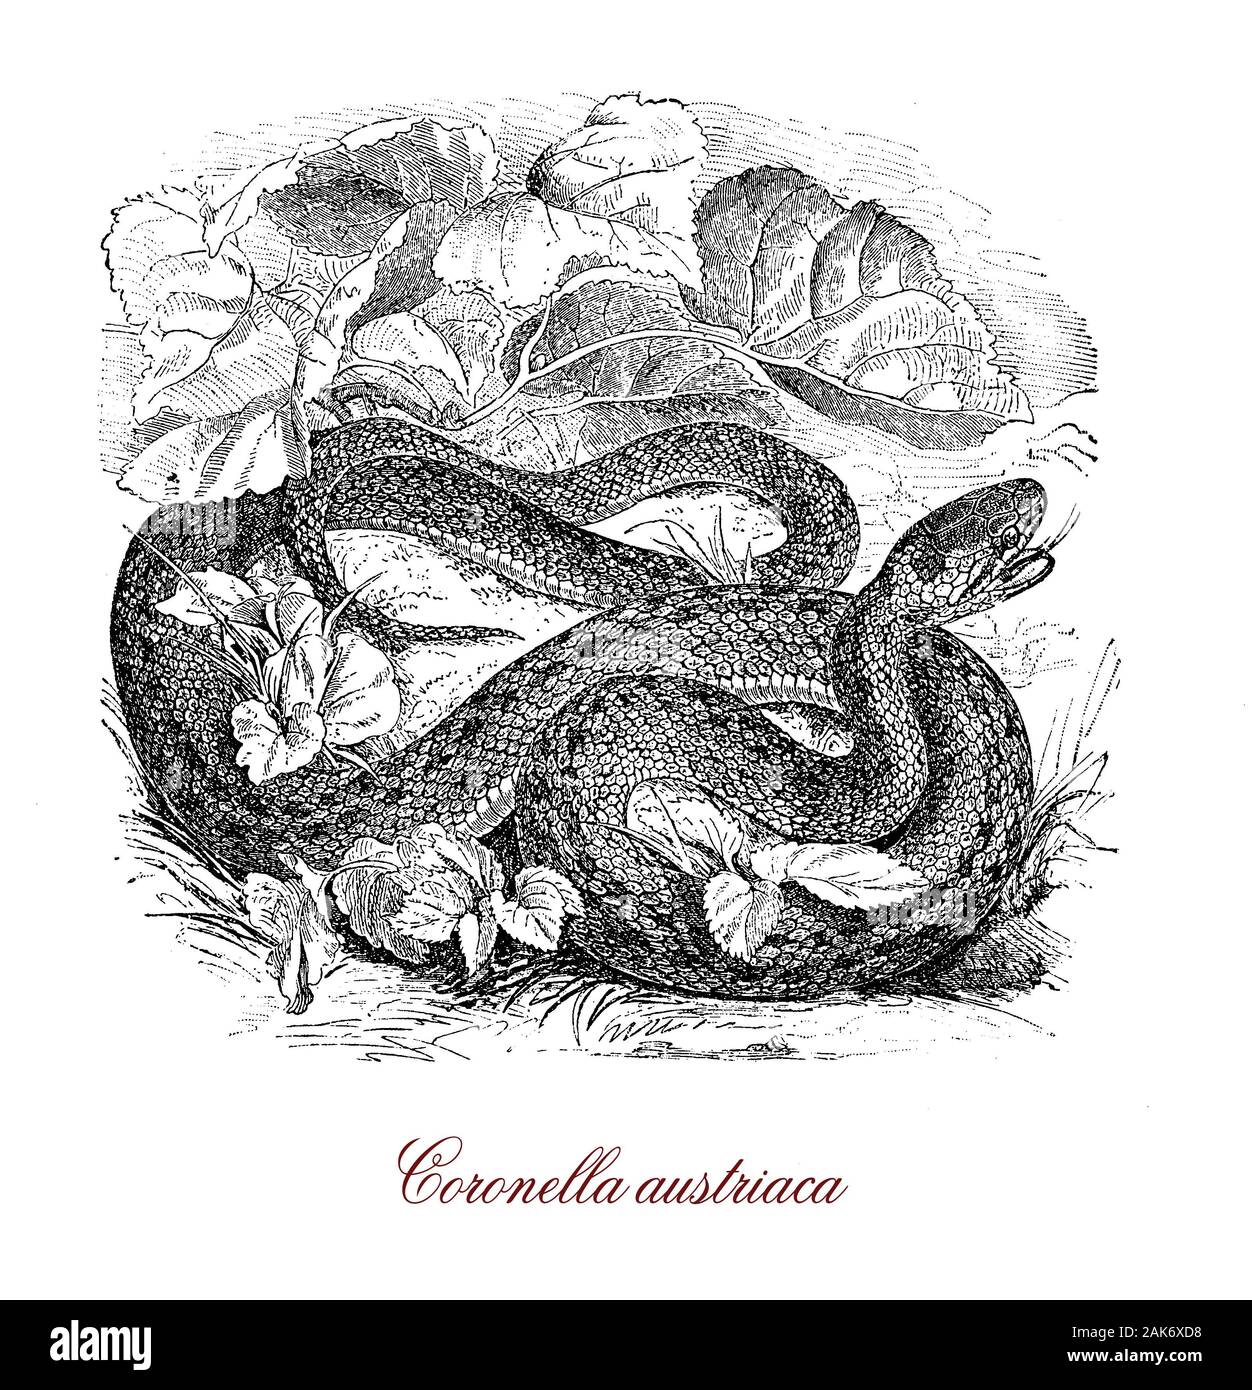 Serpente liscio o Coronella austriaca non-serpente velenoso nativo di Europa settentrionale e centrale, raggiunge una lunghezza massima di 60 cm., ha una scala rostrale su la testa e la pelle presenta una trama liscia Foto Stock